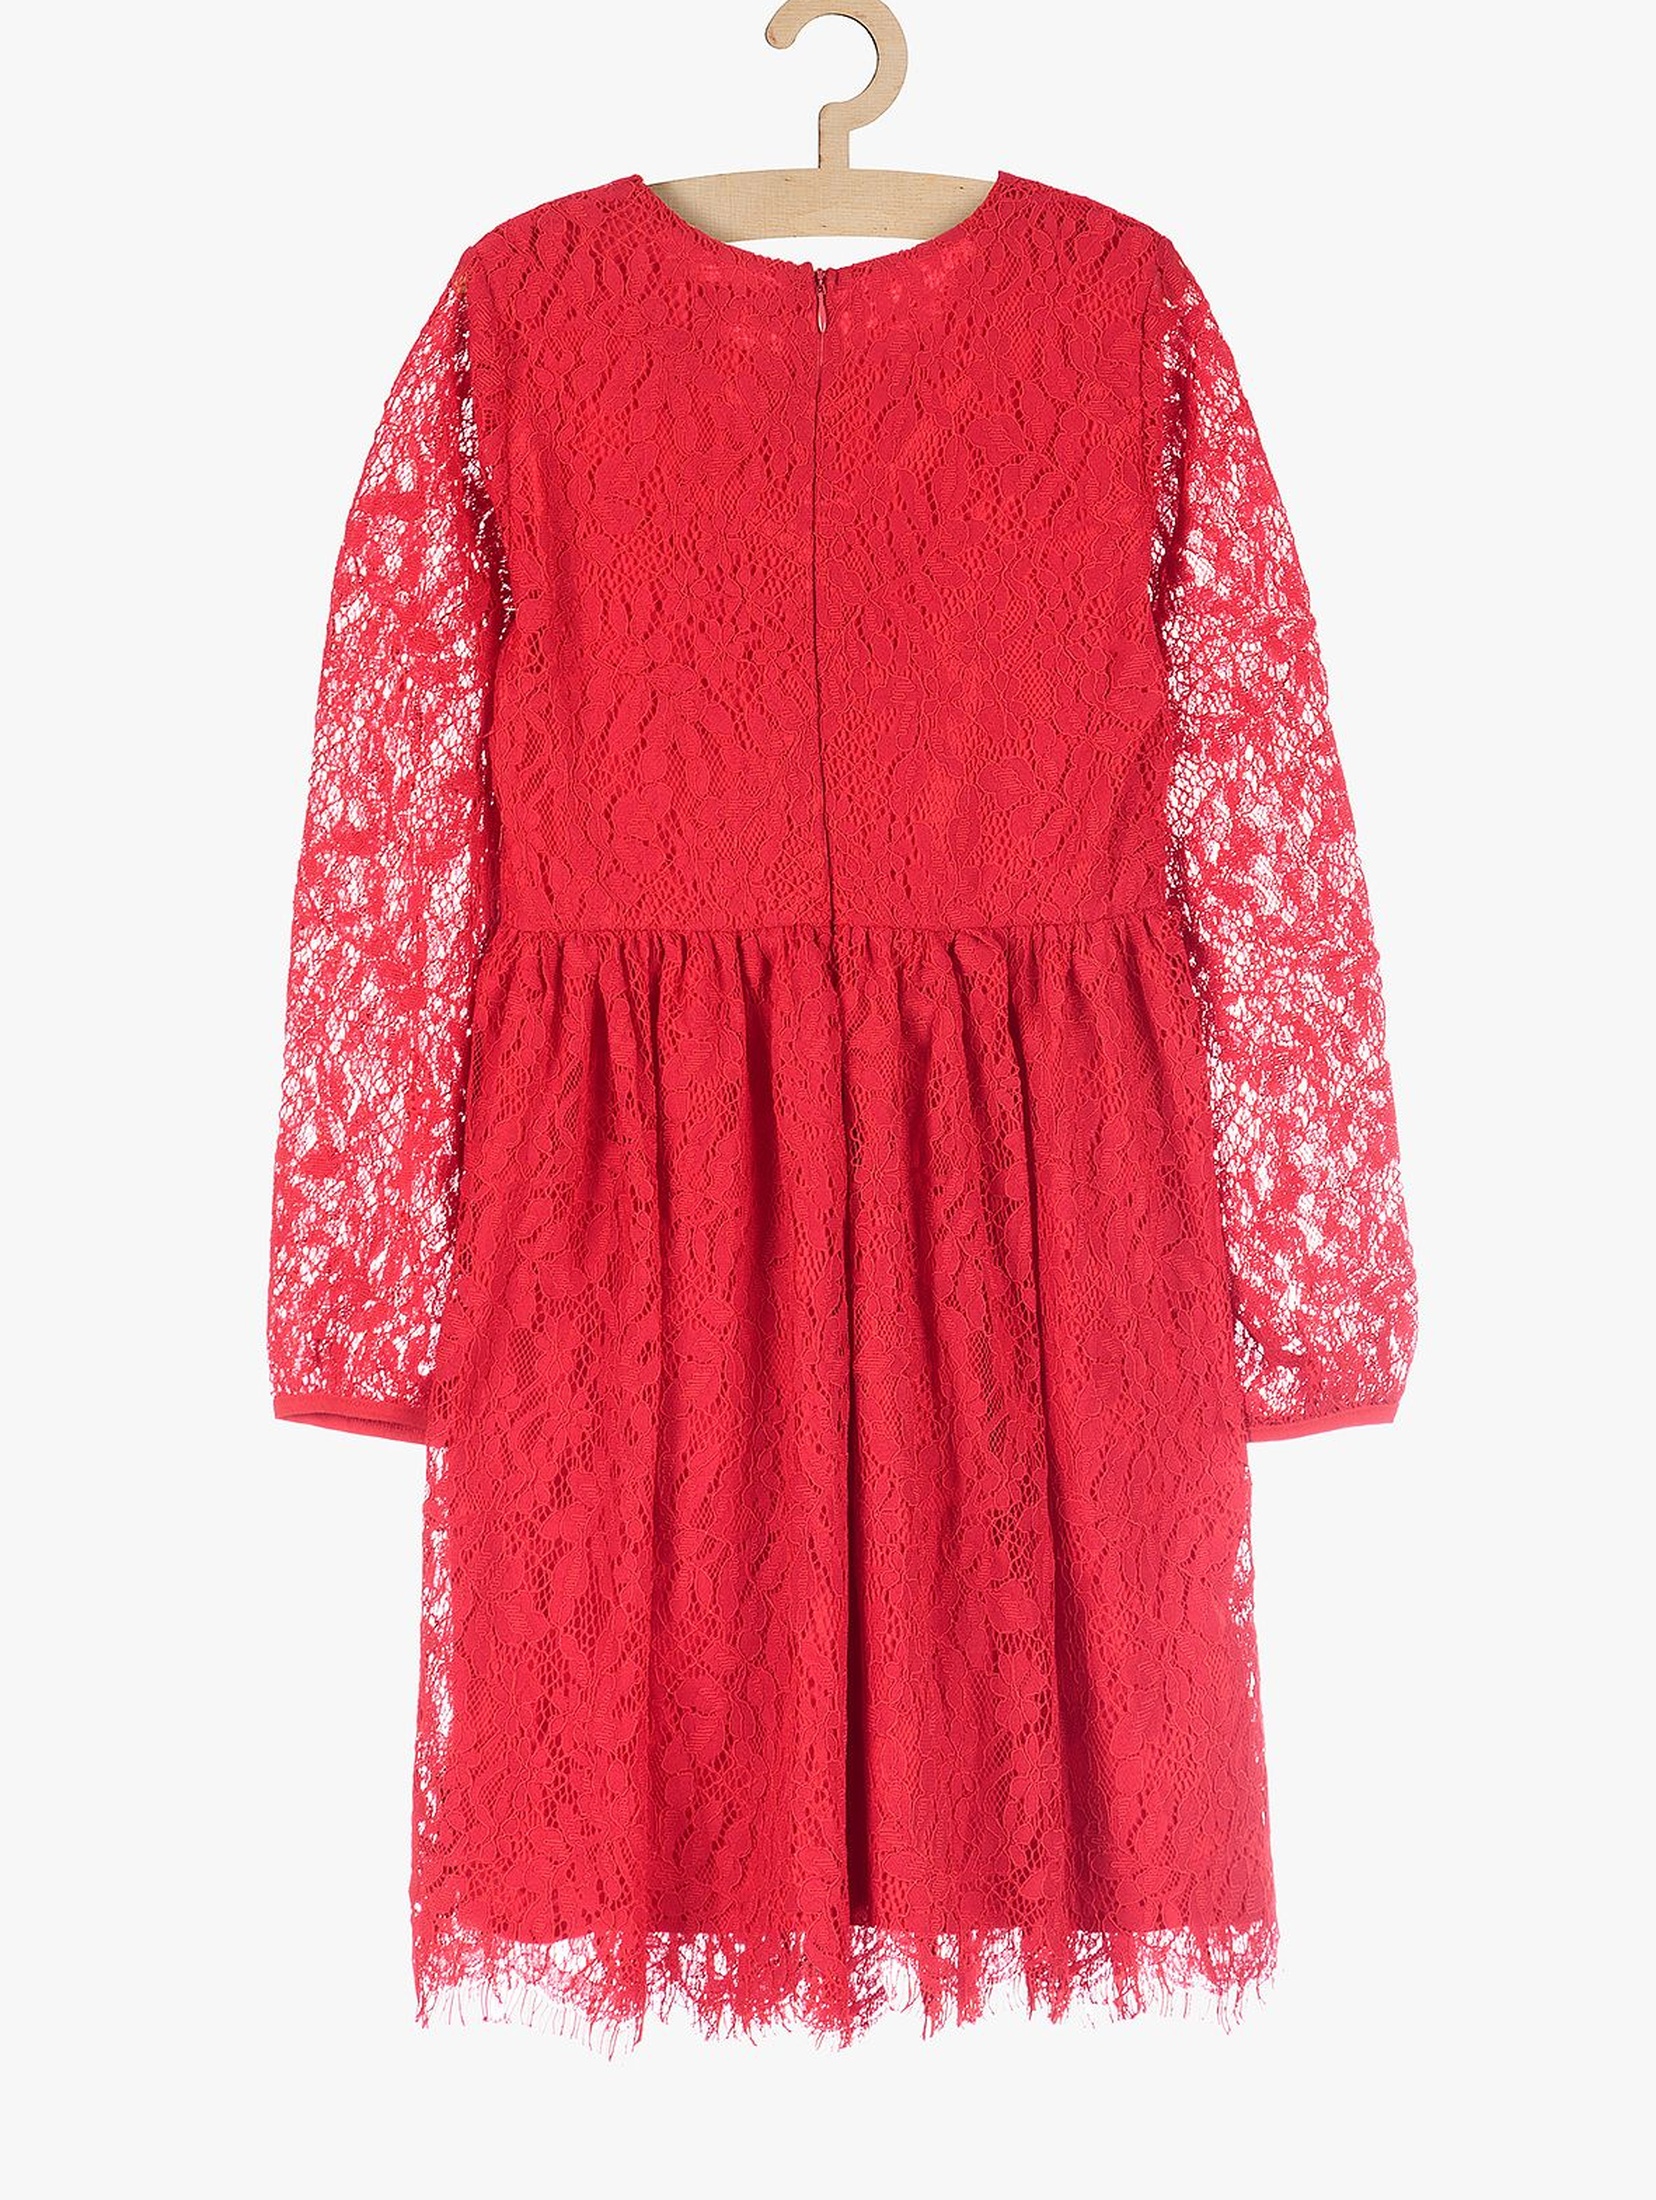 Koronkowa elegancka sukienka dla dziewczynki- czerwona